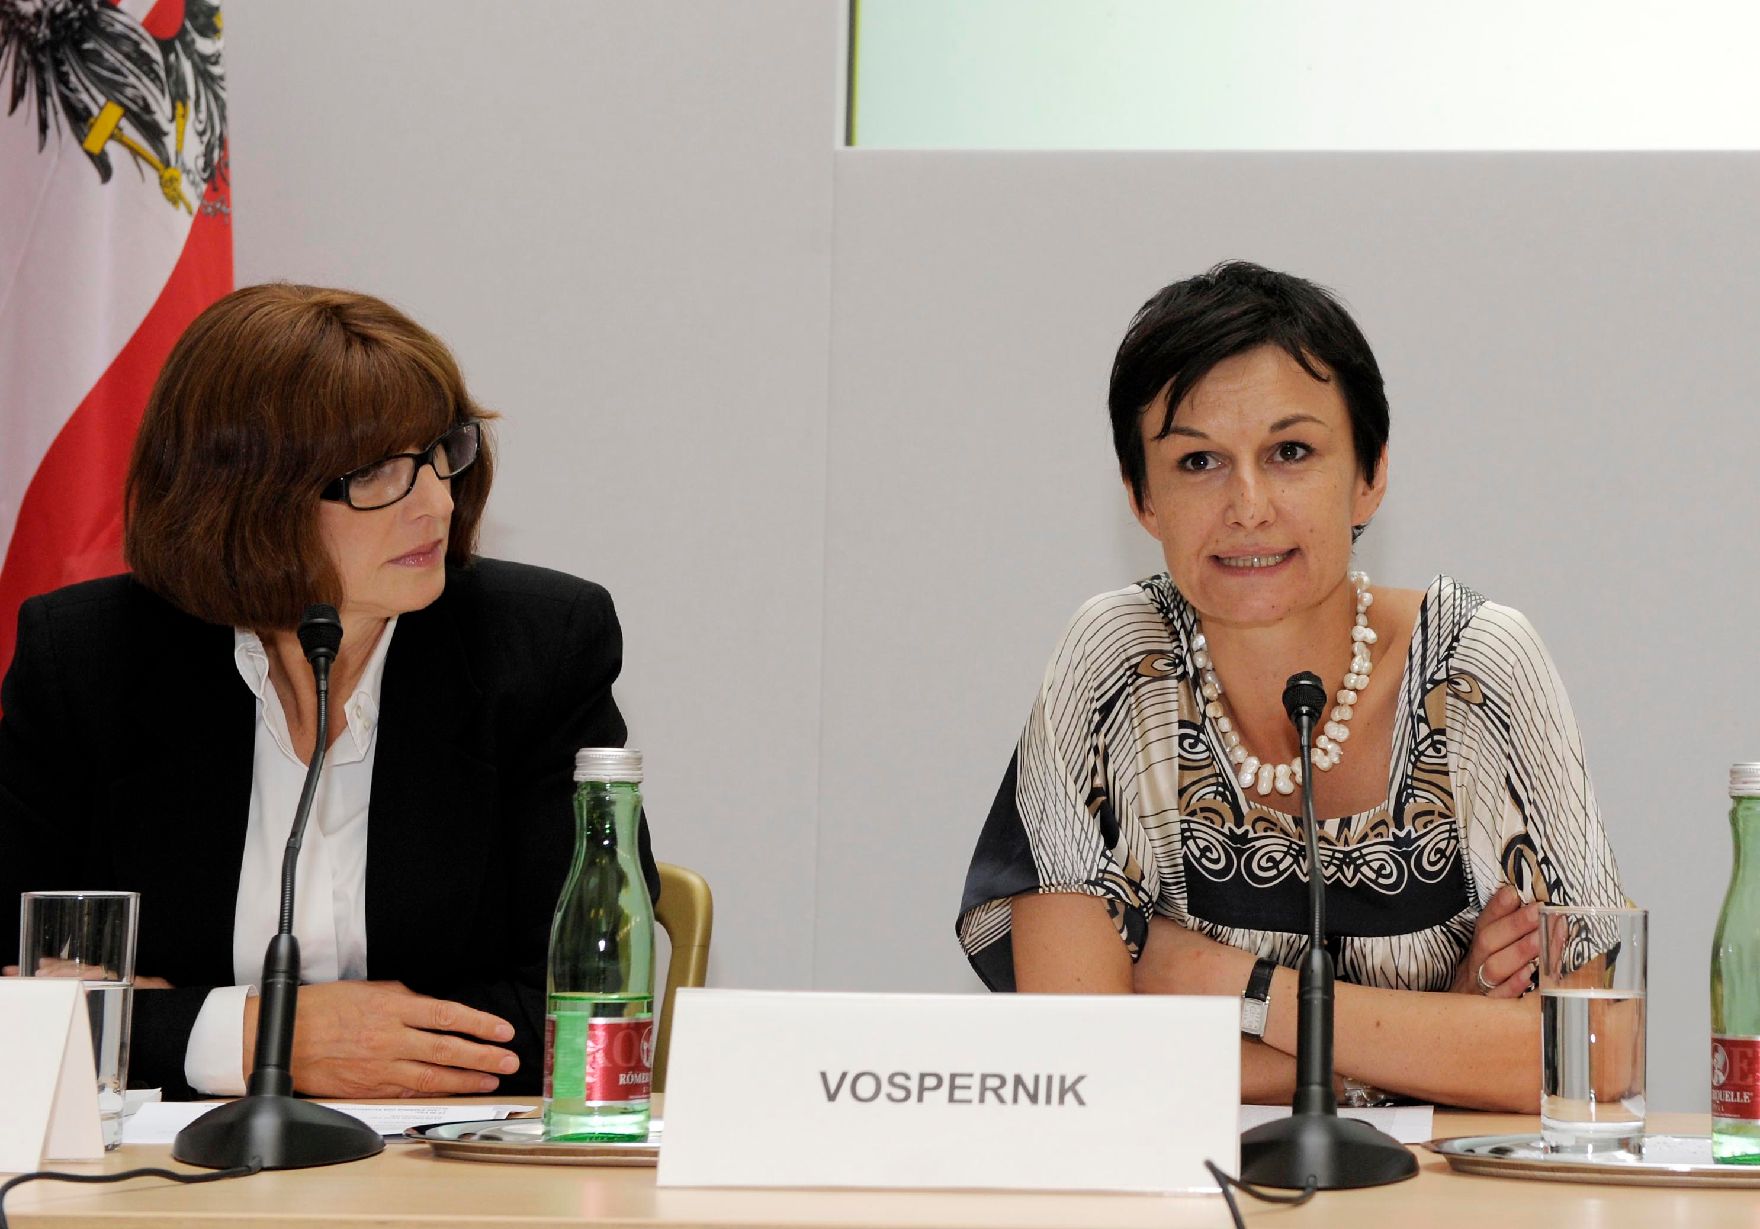 Am 14. September 2011 fand das Mediensymposium Österreich-China in Wien statt. Im Bild (l.) Margaretha Kopeinig (Moderation) und (r.) Cornelia Vospernik (ORF).